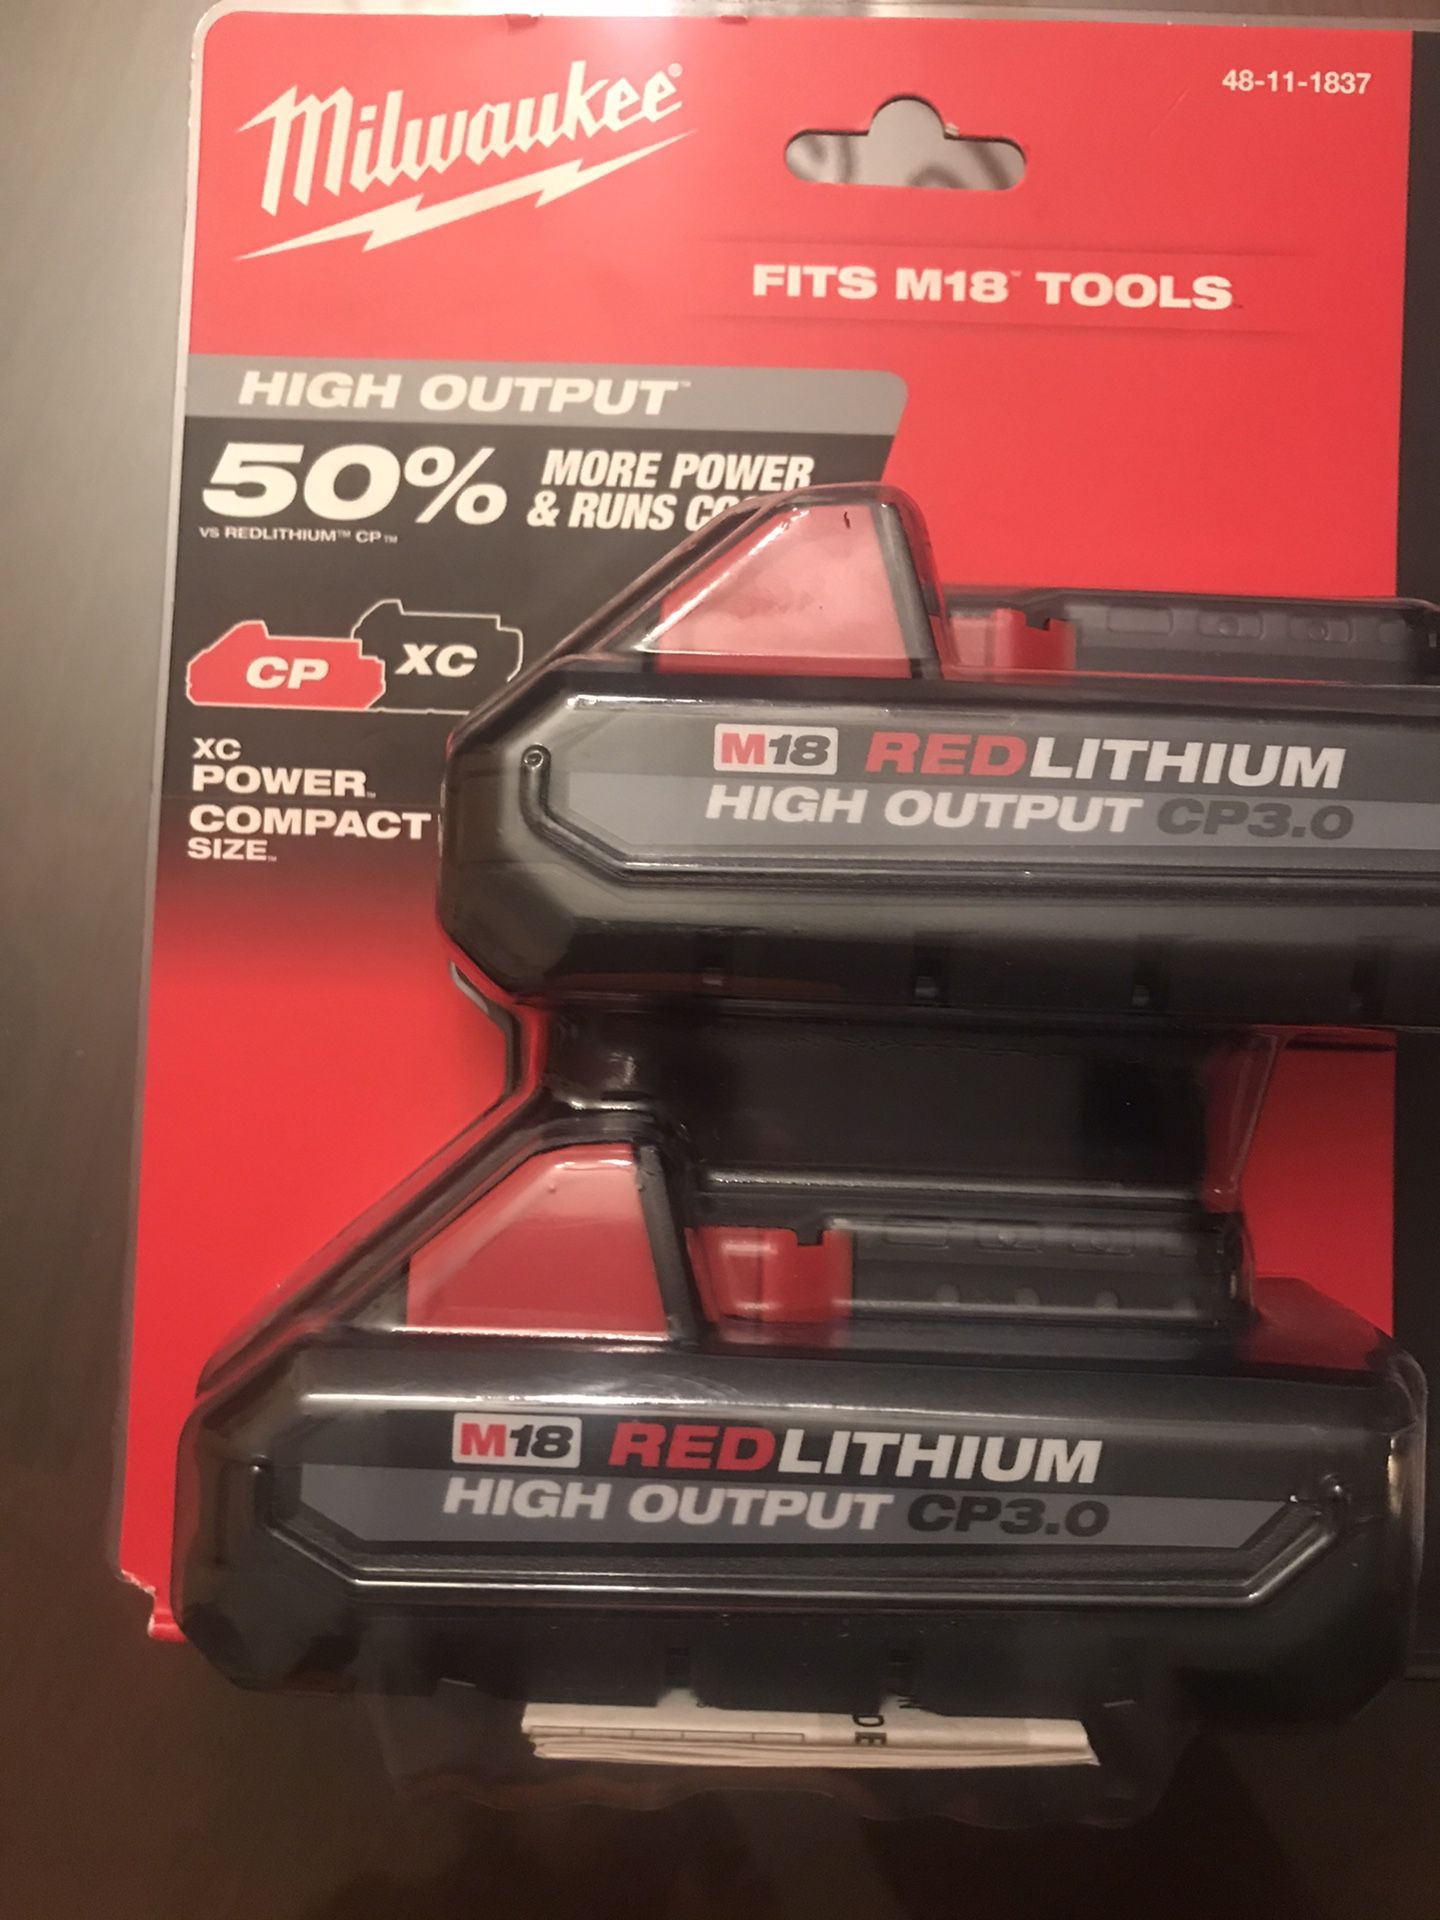 Milwaukee batteries 3.0 high output